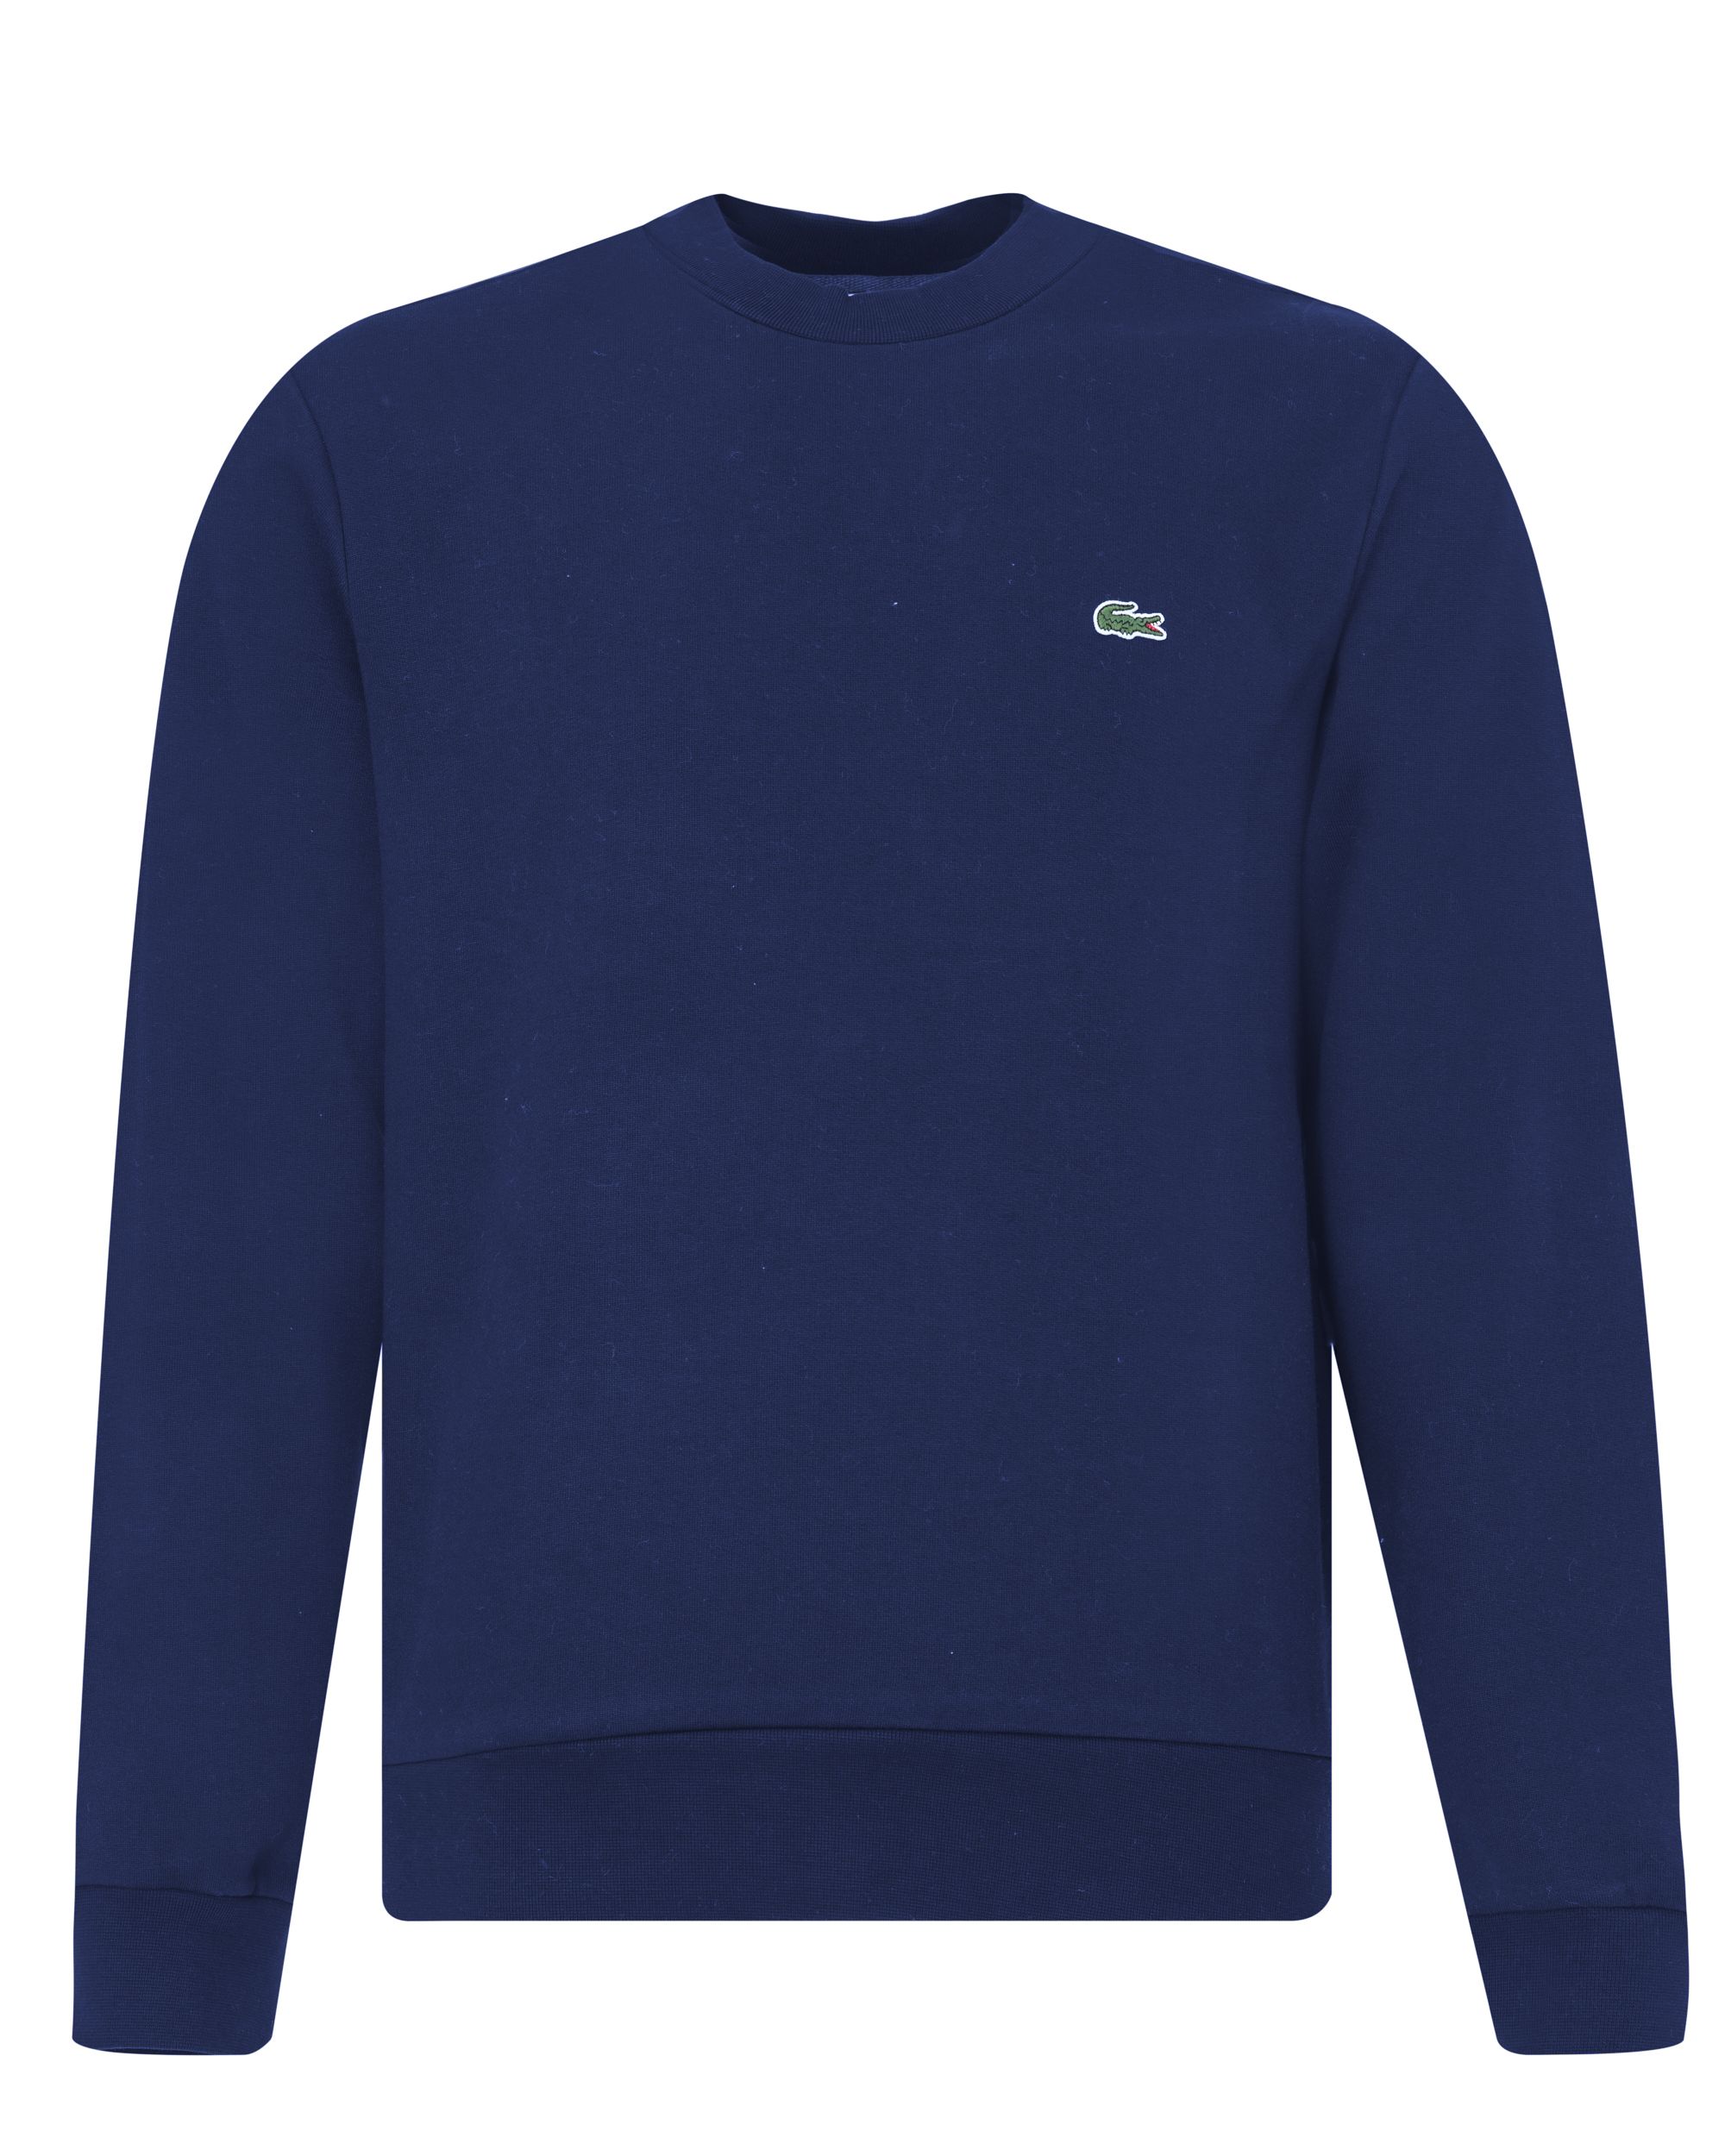 Lacoste Sweater Donker blauw 078814-003-4